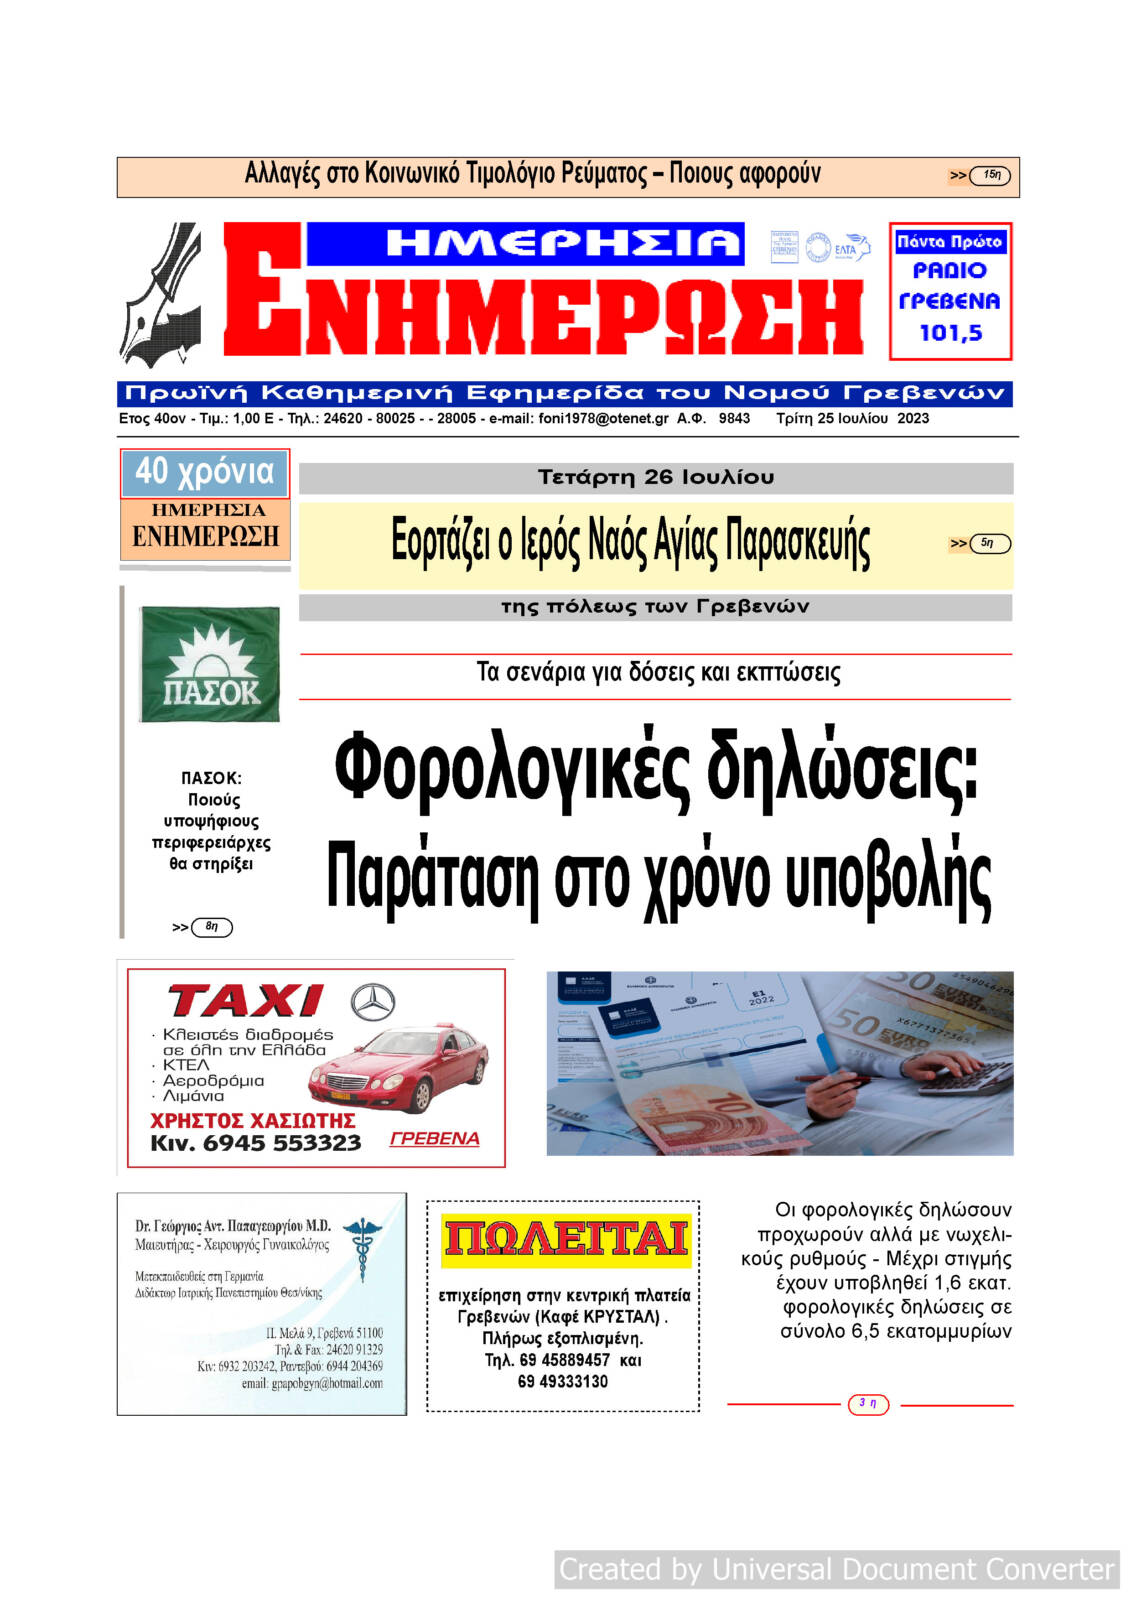 Τρίτη 25 Ιουλίου: Η πρώτη σελίδα της Καθημερινής Εφημερίδας “ΗΜΕΡΗΣΙΑ ΕΝΗΜΕΡΩΣΗ” Γρεβενών